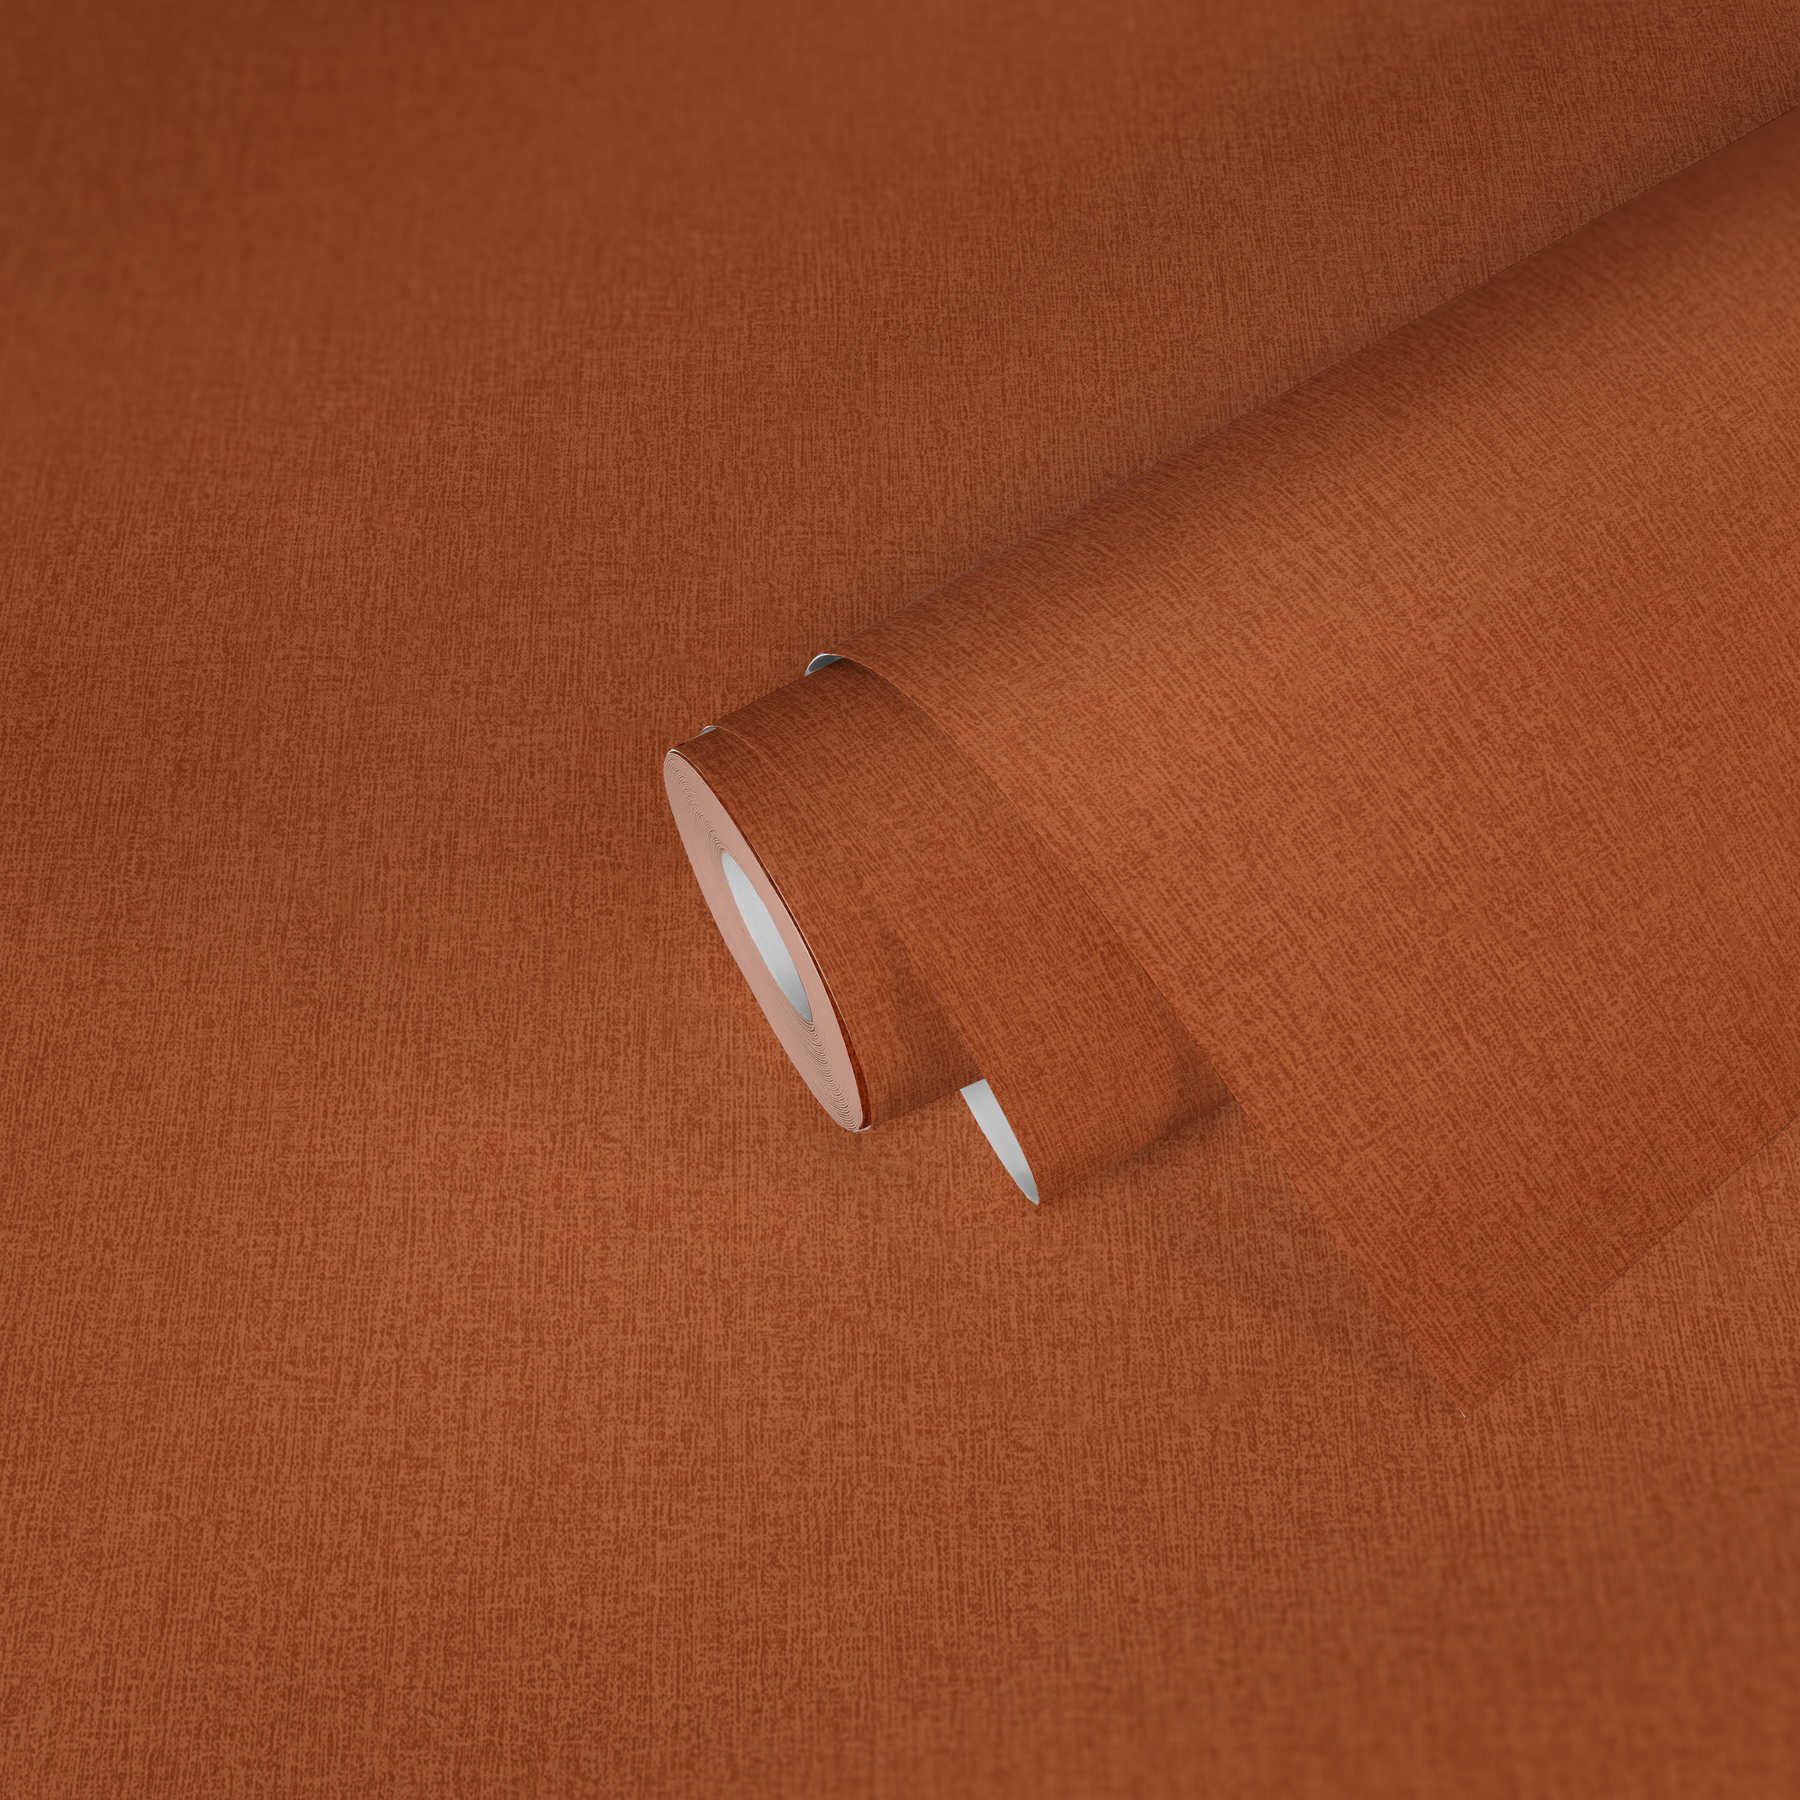             Einfarbige Tapete meliert mit Gewebestruktur – Orange
        